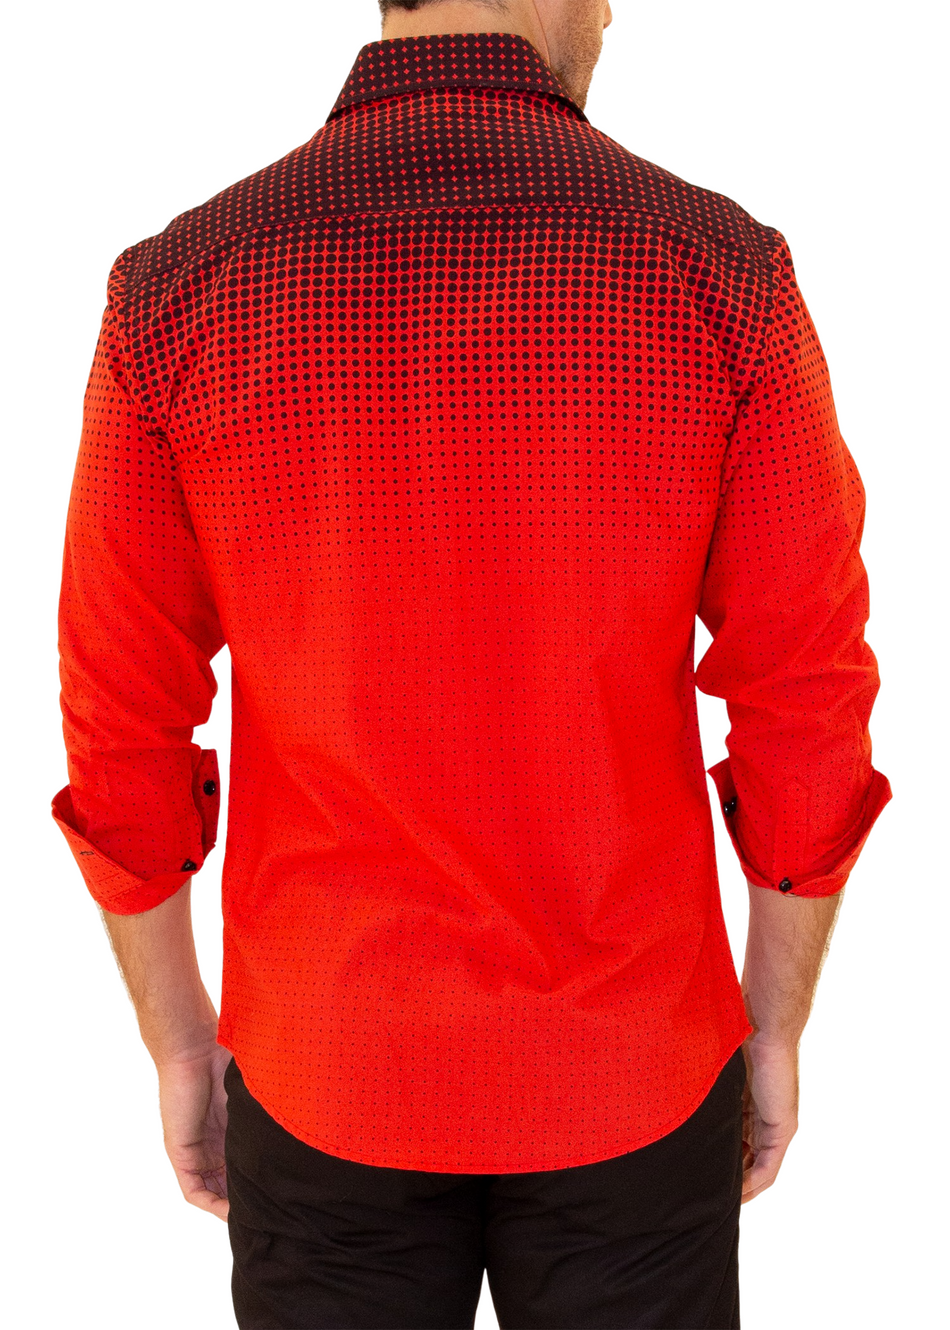 202500 - Men's Red Button Up Long Sleeve Dress Shirt